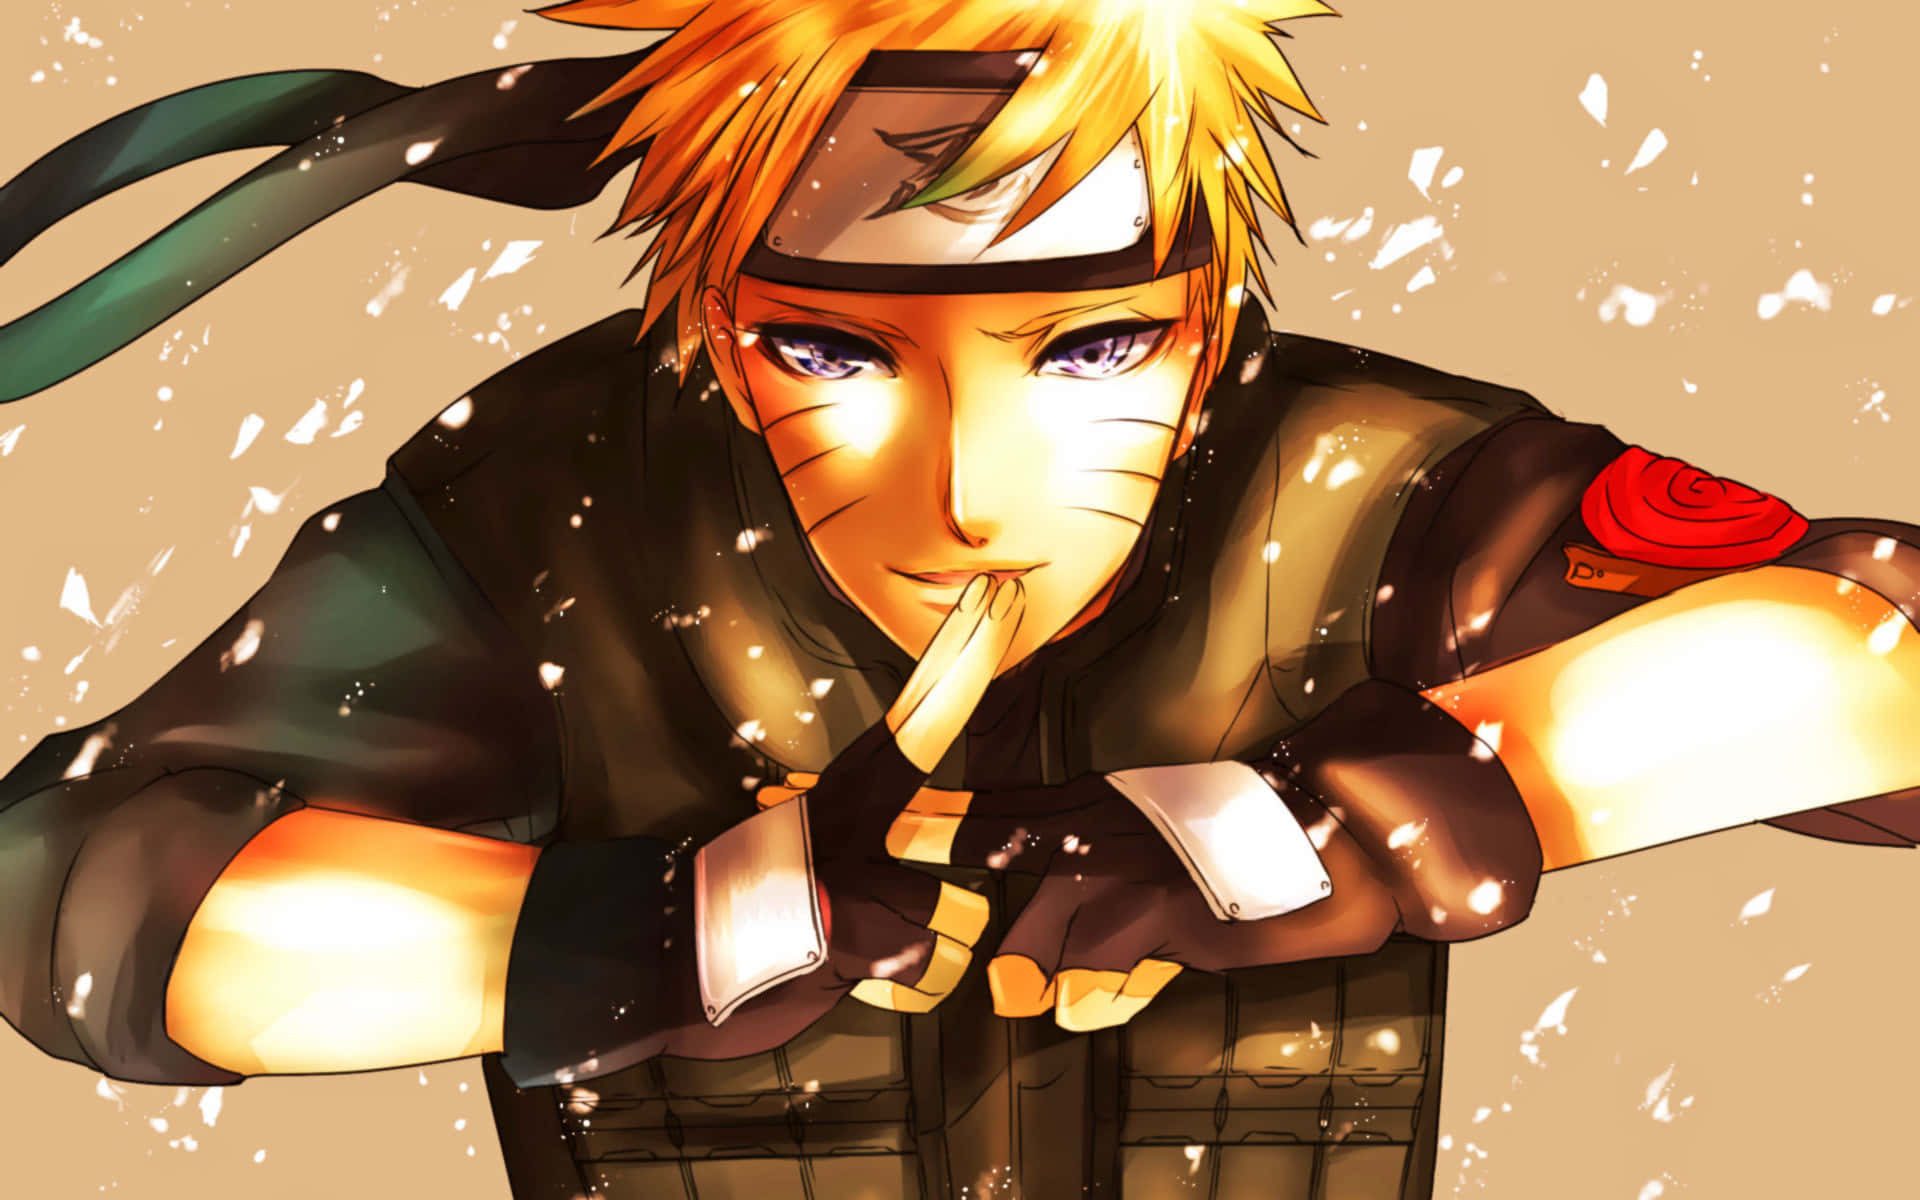 Følg Naruto i hans episke rejse til at blive ninja! Wallpaper